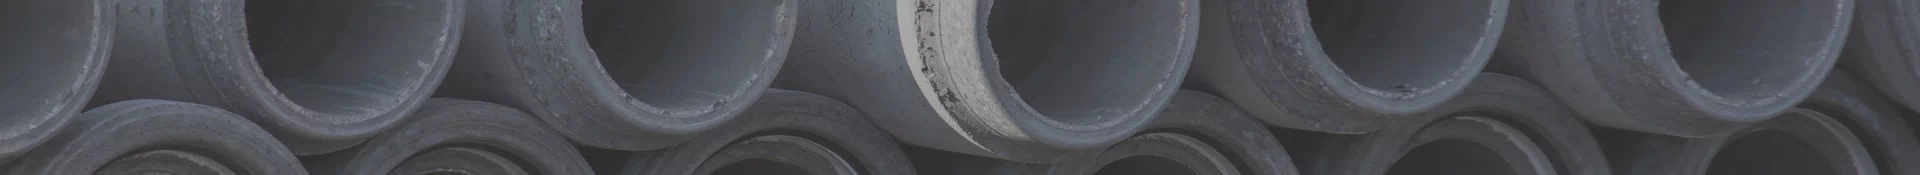 Duża ilość rur betonowych